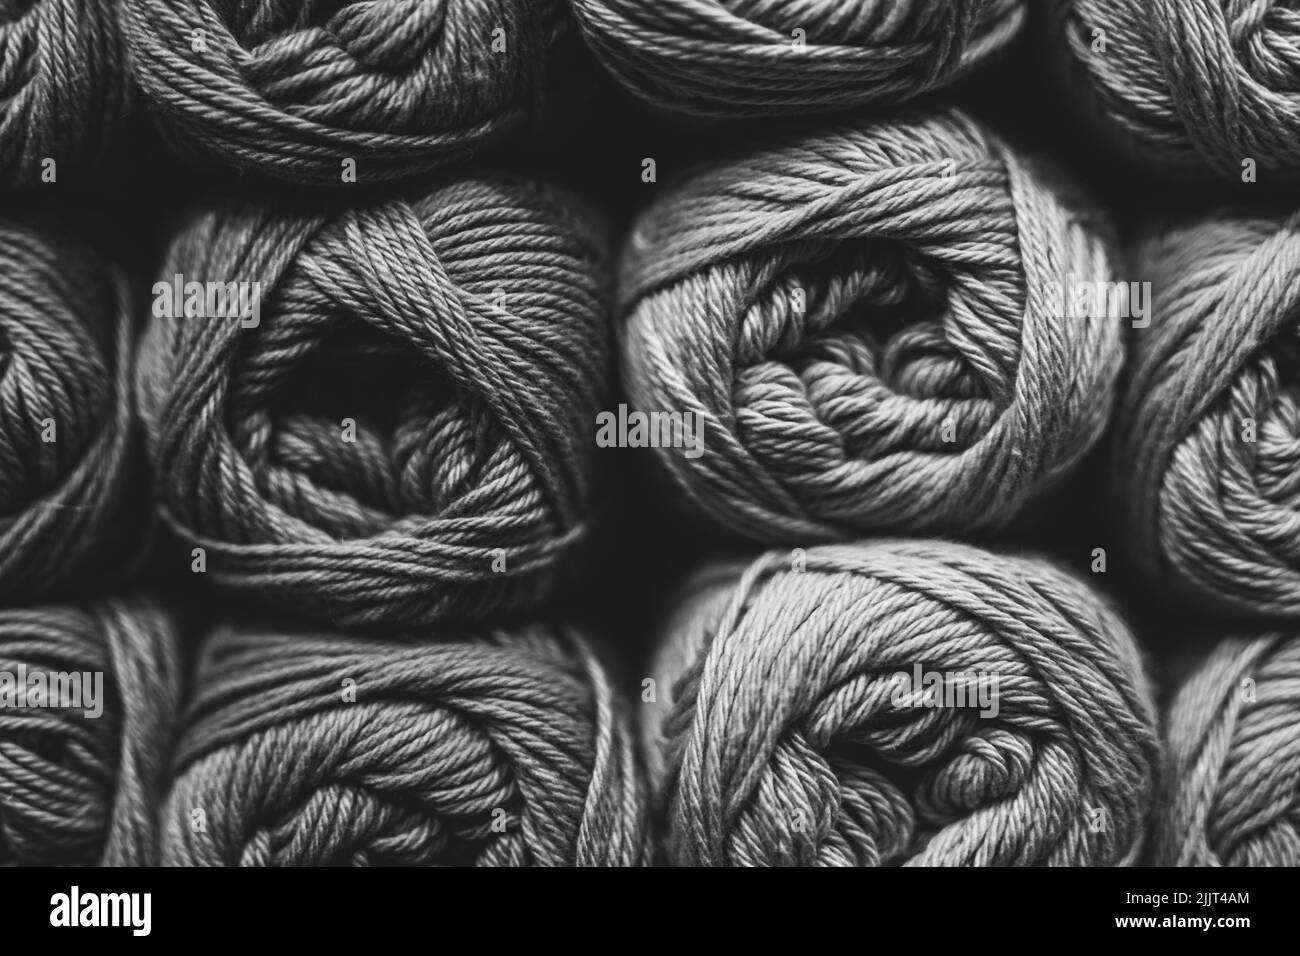 Una vista de primer plano de bolas de hilo en fondo blanco y negro, materiales para costura, tejer, aficiones Foto de stock